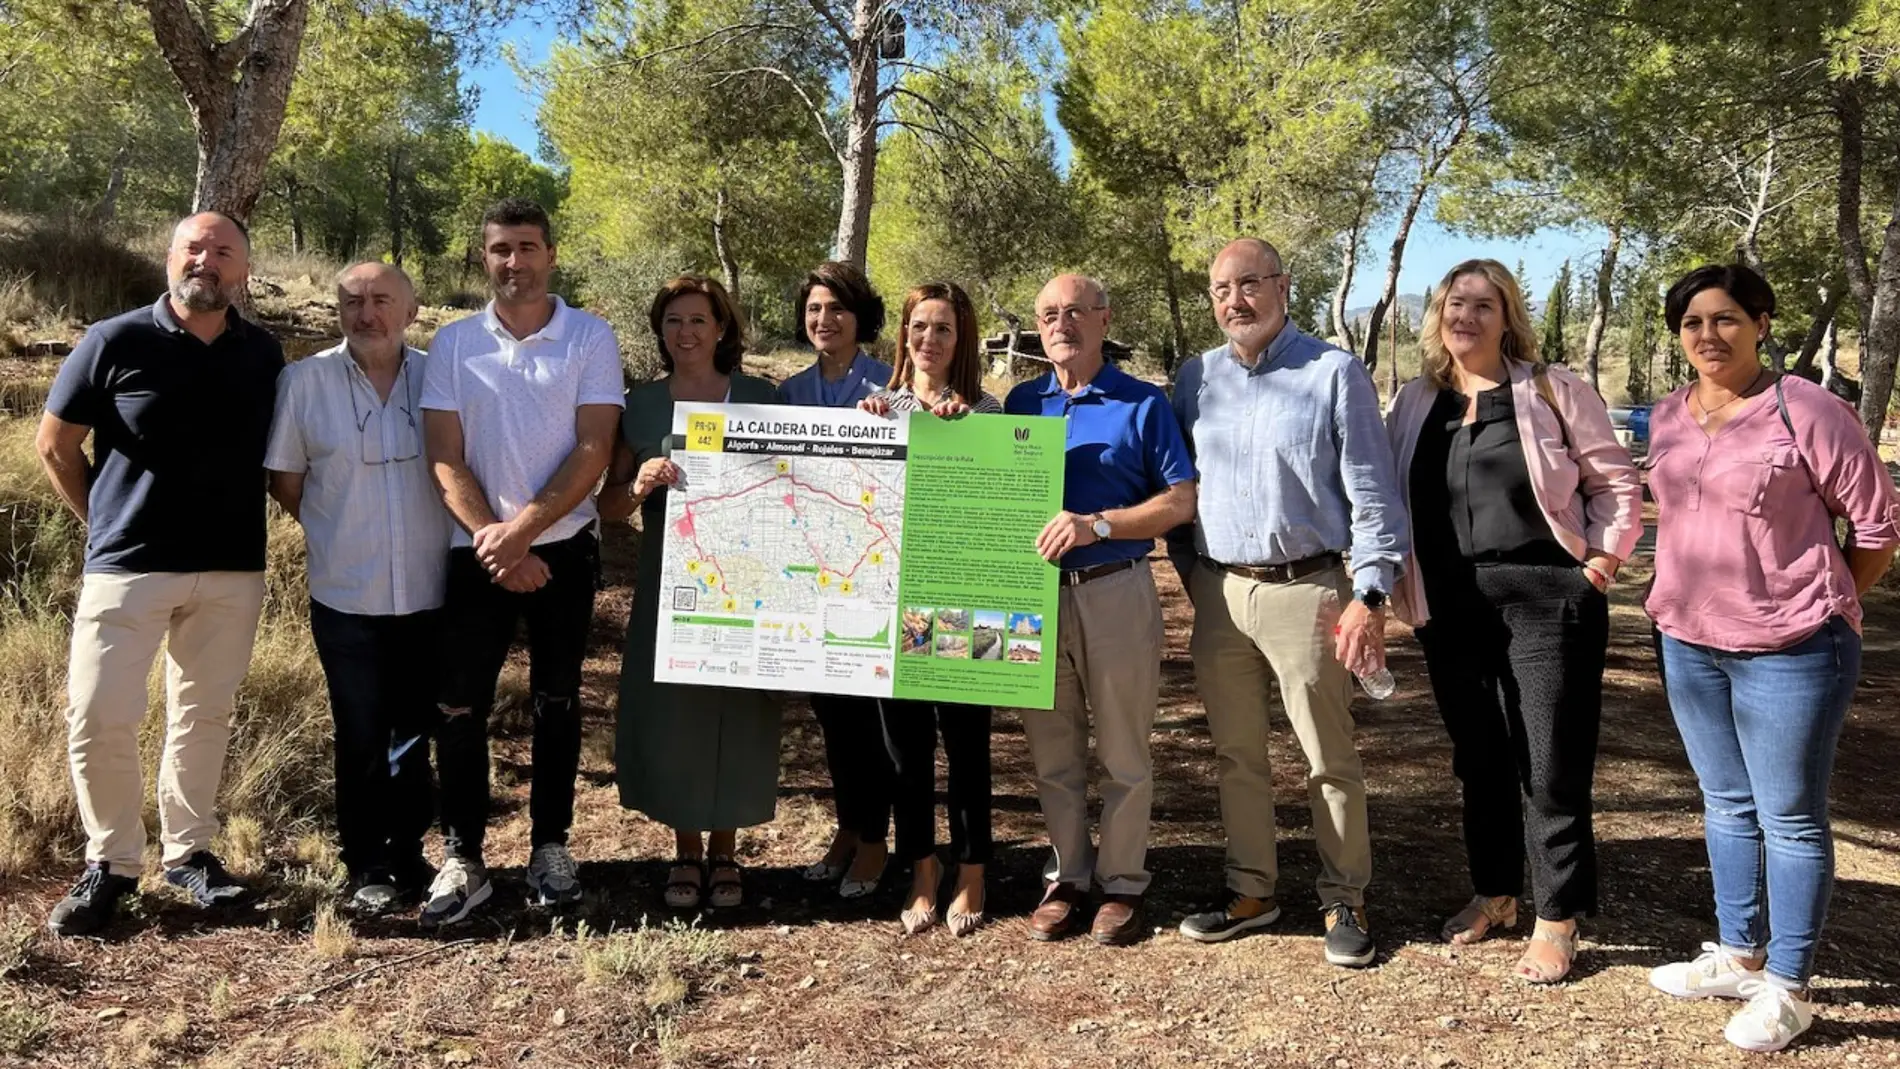 Convega promueve el turismo de la comarca con la ruta de senderismo “La Caldera del Gigante” 